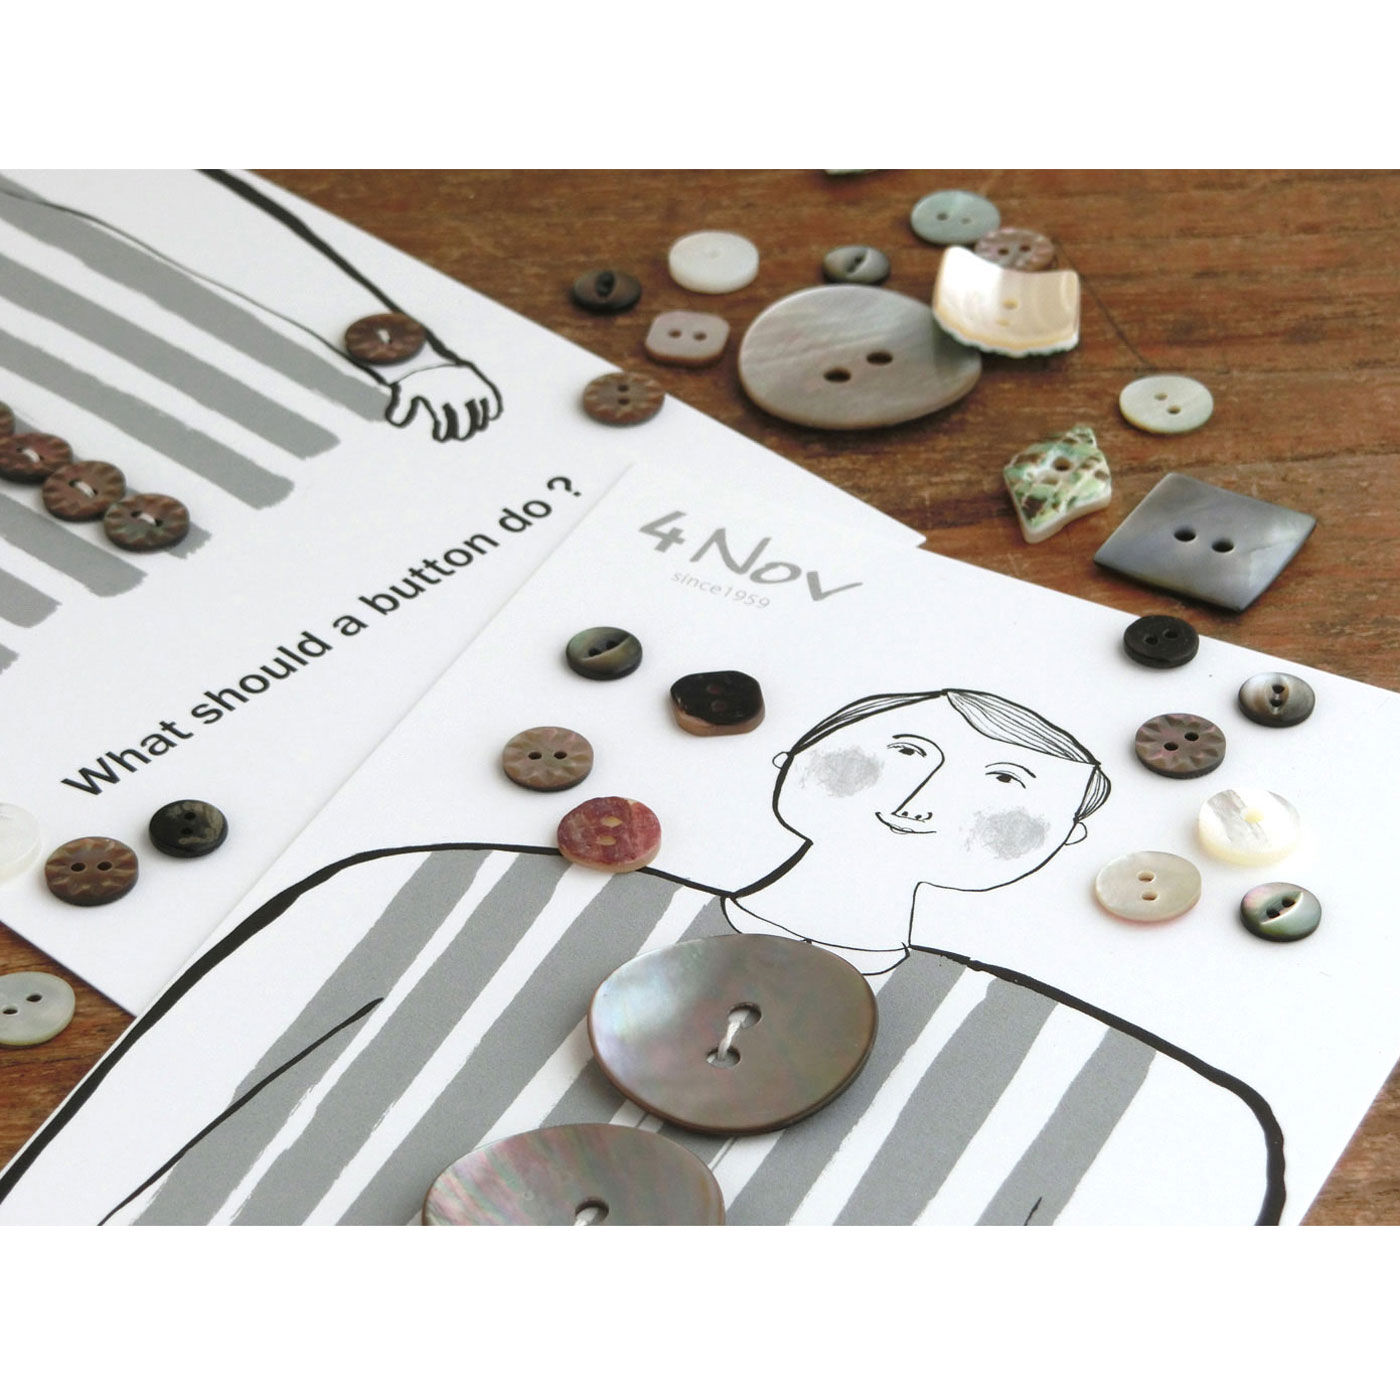 フェリシモの雑貨 Kraso|4Nov 奈良の貝ボタン職人が作った貝殻ピアス〈高瀬貝 ボタン〉|【奈良の贈りものプロジェクト】贈る方にも、贈られる方にも感動を。そんな贈りものを、奈良でつくりたい……。奈良の地がはぐくむ、穏やかで簡素、それでいて洗練されたものをめざす「奈良の贈りものプロジェクト」から生まれた、宝物のような愛らしい貝ボタンたち（写真）も、フーズノートで販売中です。※この写真の台紙は、ボタン用の大きなサイズのものです。